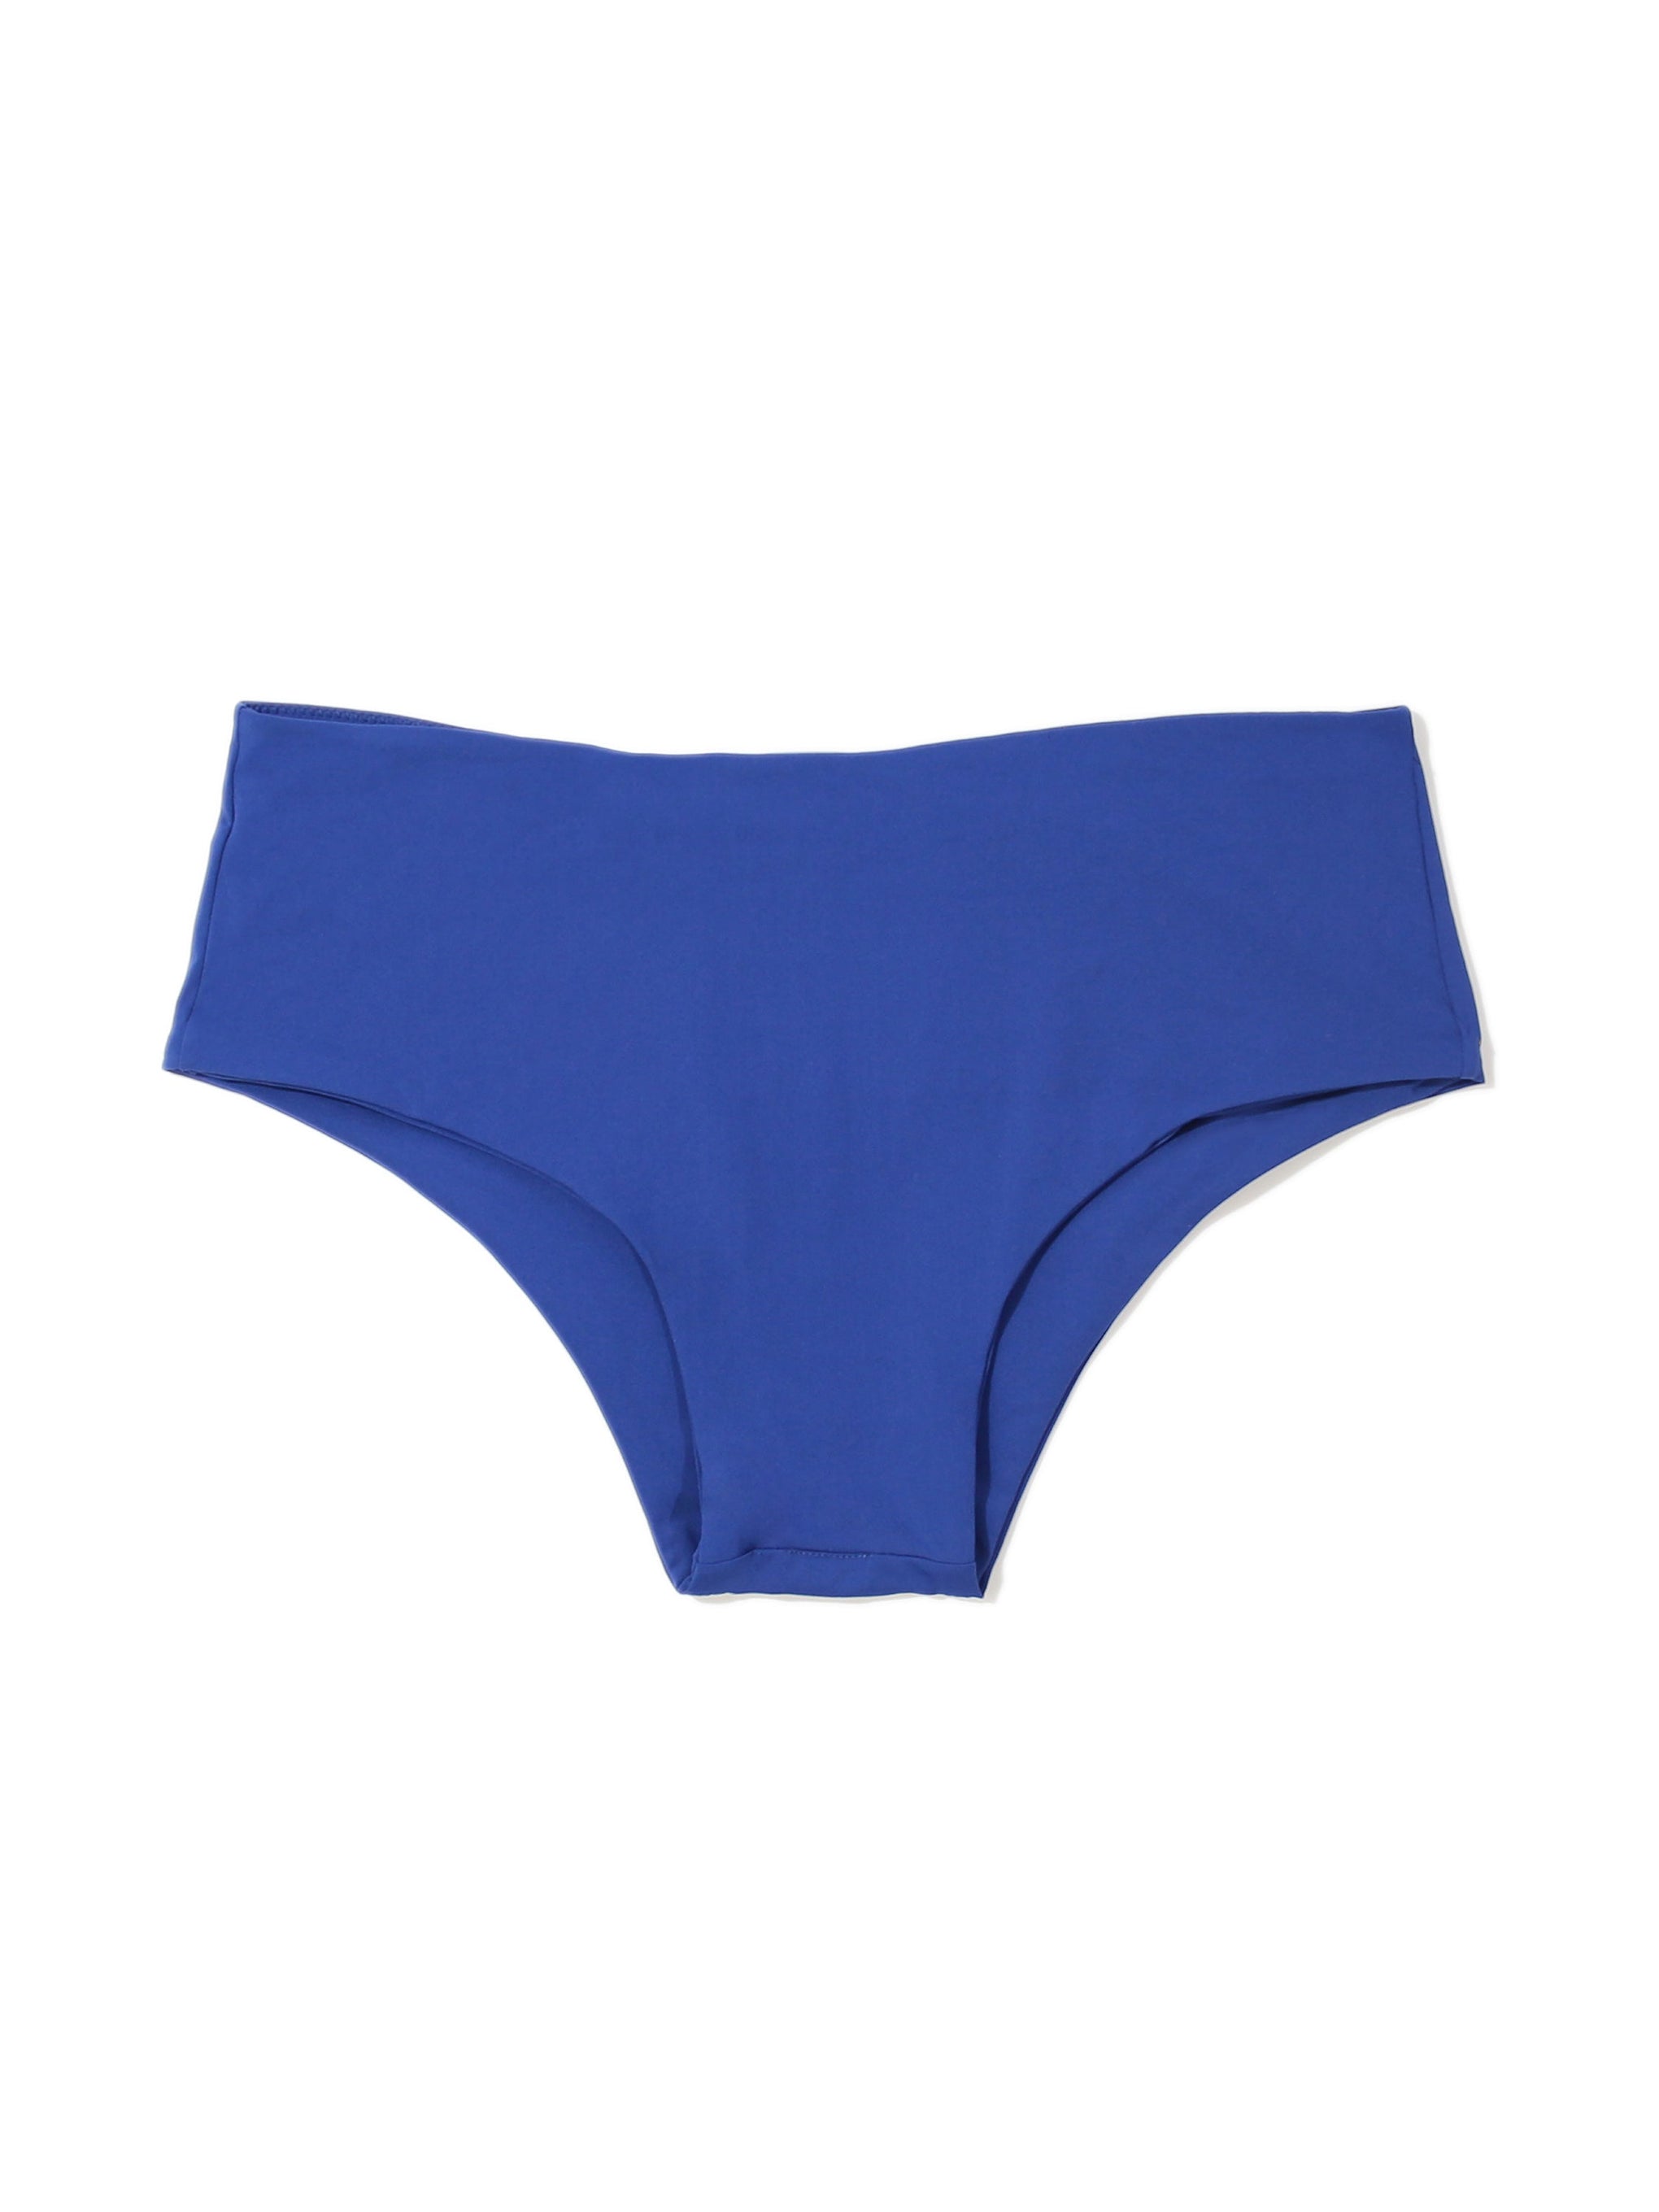 Boyshort Swimsuit Bottom Poolside Blue